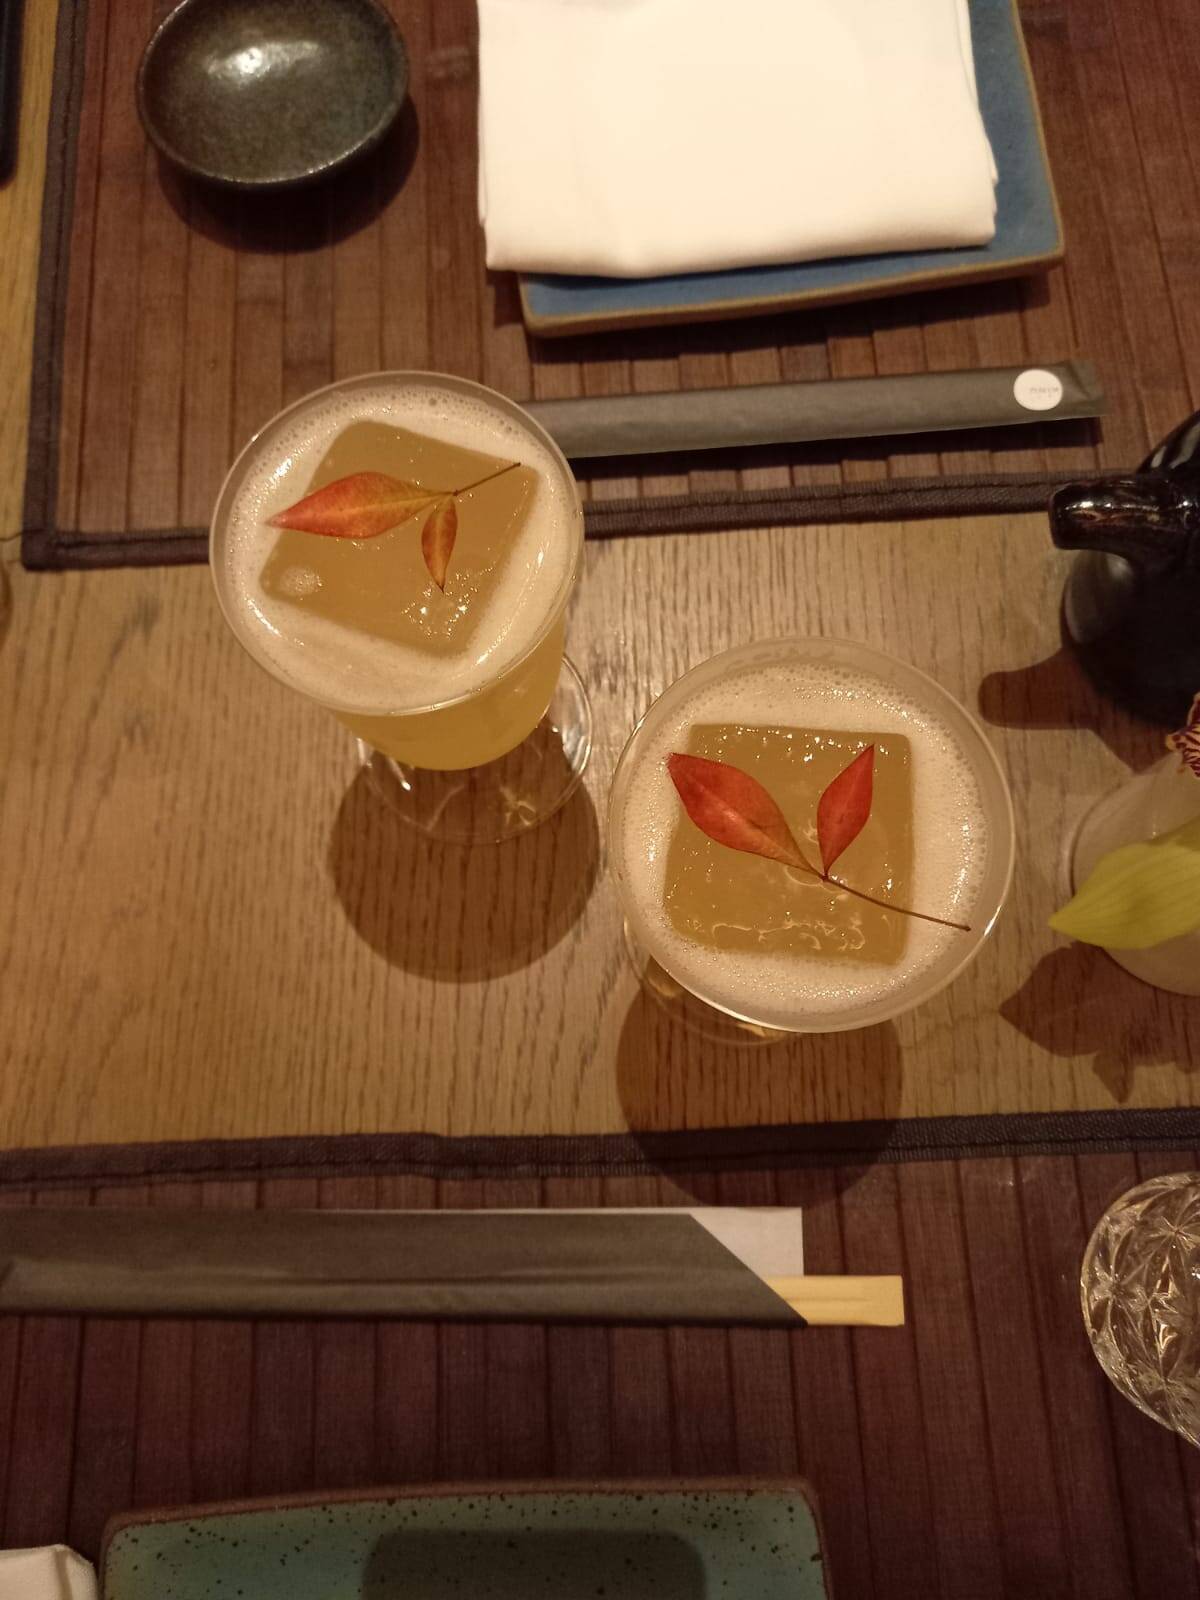 Lost in Japan leva na preparação sake, fin, luzardo e yuzu. Foto: Portal iG/Camila Cetrone